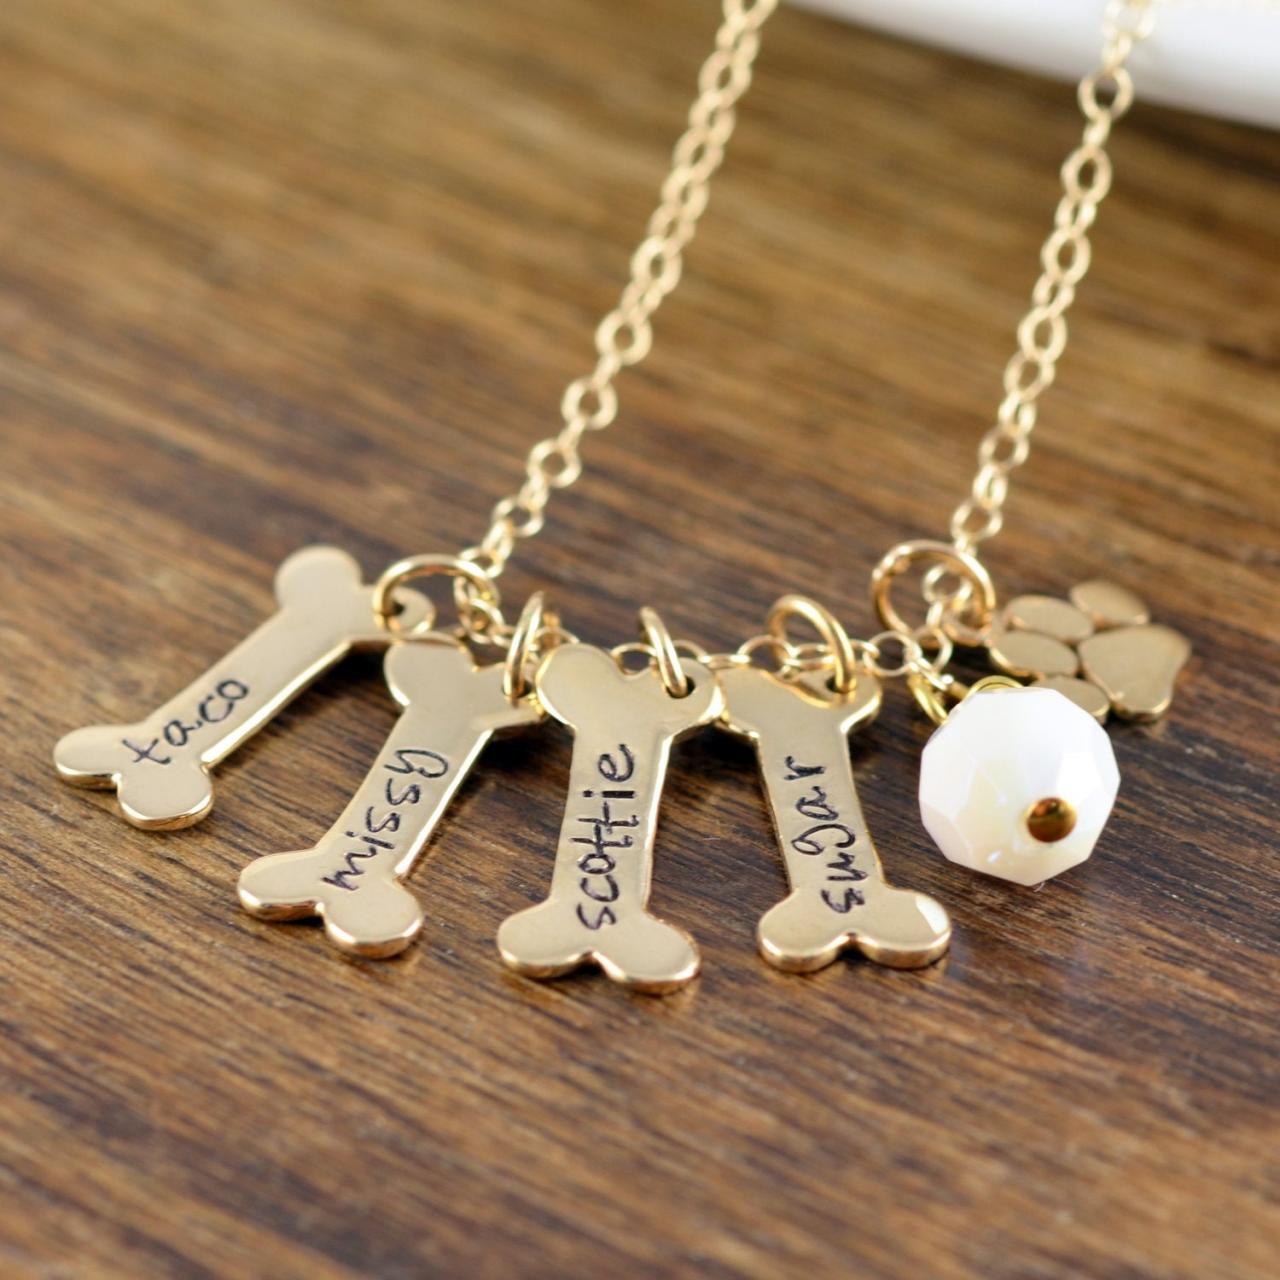 Gold Dog Bone Necklace, Dog Bone Charm, Dog Mom Gift, Dog Paw Charm, Dog Charm Necklace, Dog Lover Necklace,Dog Lover Gift, Dog Gifts